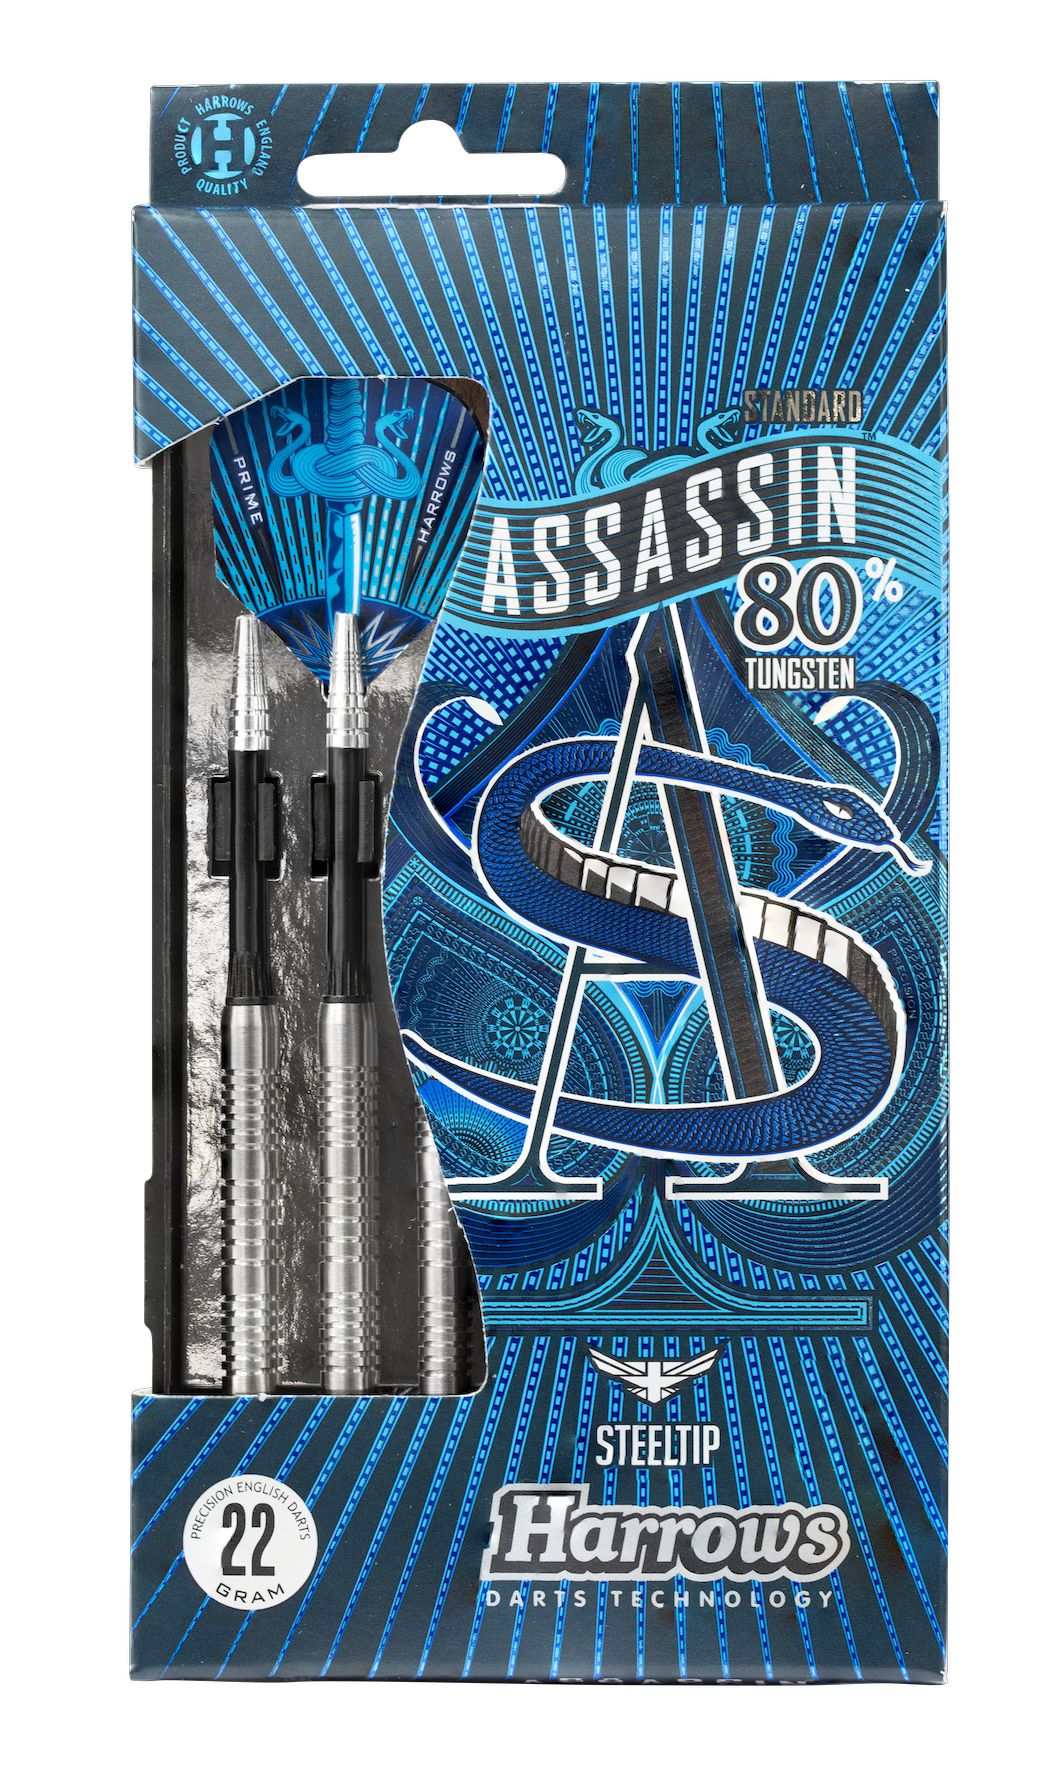 Harrows Assassin 80% Tungsten dartstikat